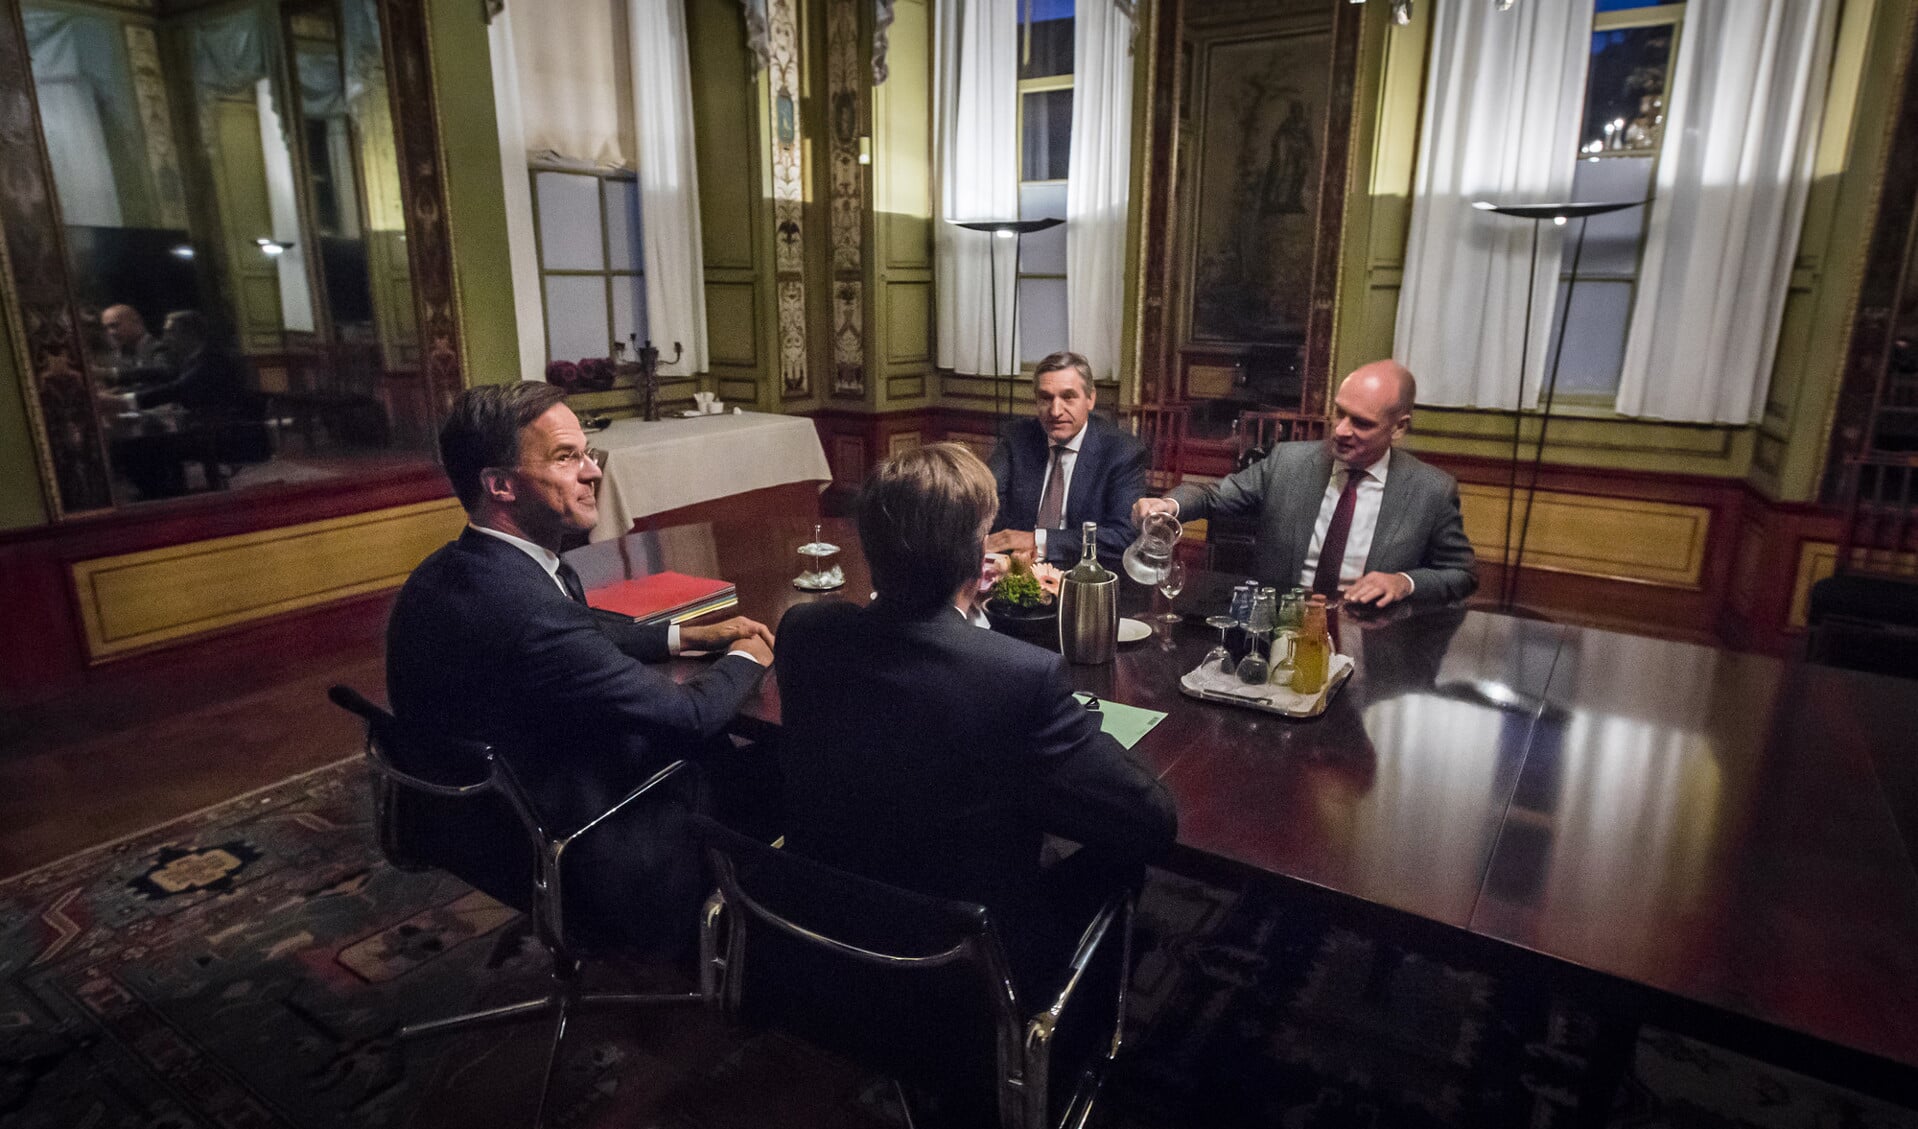 ChristenUnie-leider Gert-Jan Segers (rechts) tijdens de kabinetsformatie, met de onderhandelaars van VVD, D66 en CDA. Nu de afschaffing van de dividendbelasting duurder uitvalt, is er reden het regeerakkoord op dit punt open te breken.